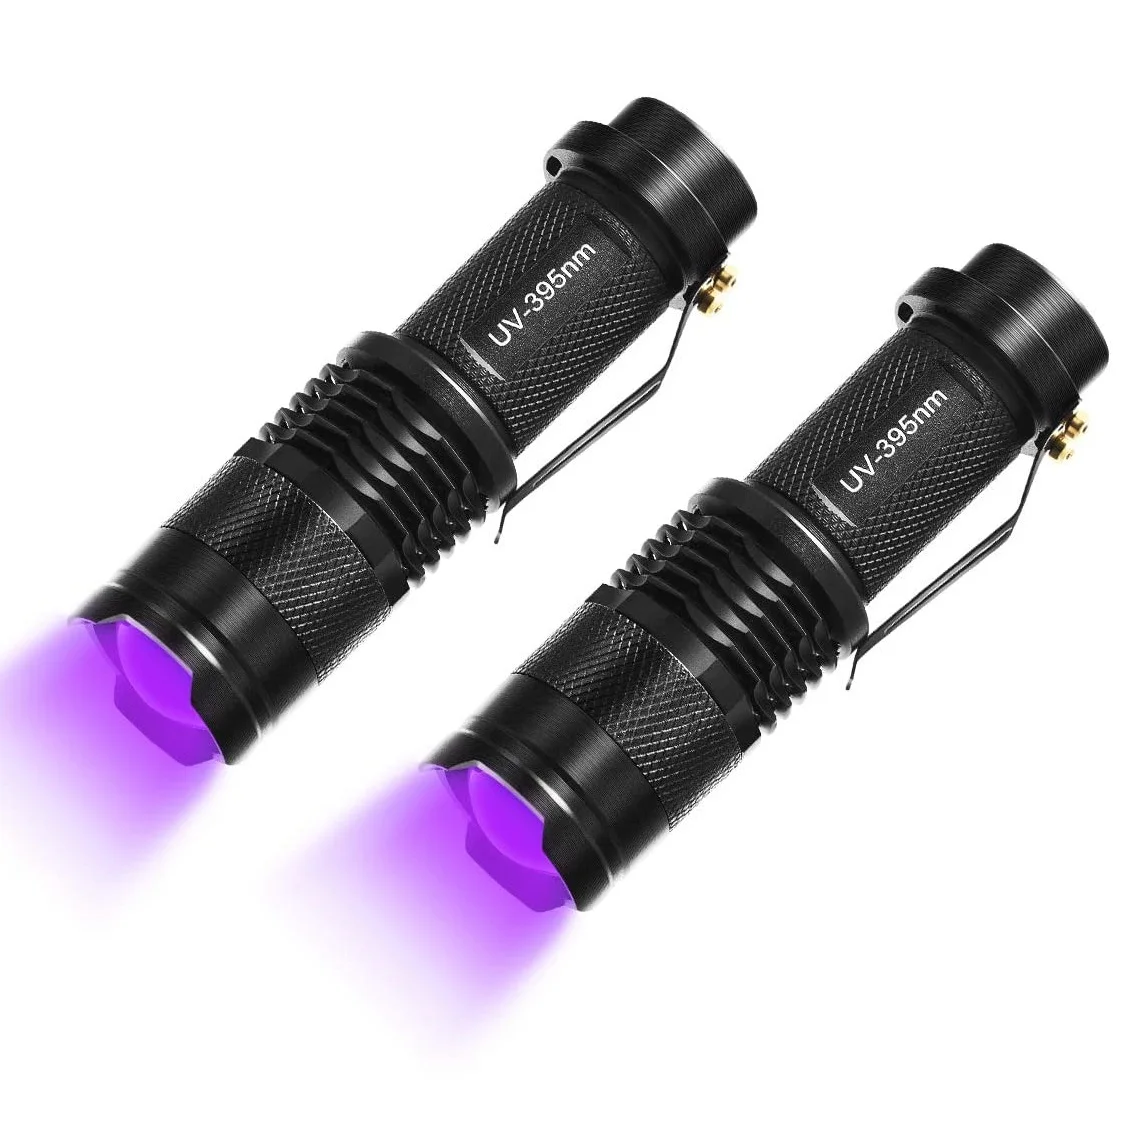 Светодиодный УФ фонарик 395нм или 365нм, черный алюминиевый фонарь с регулируемой яркостью, детектор мочи, Ультрафиолетовый фонарь для скорпионов